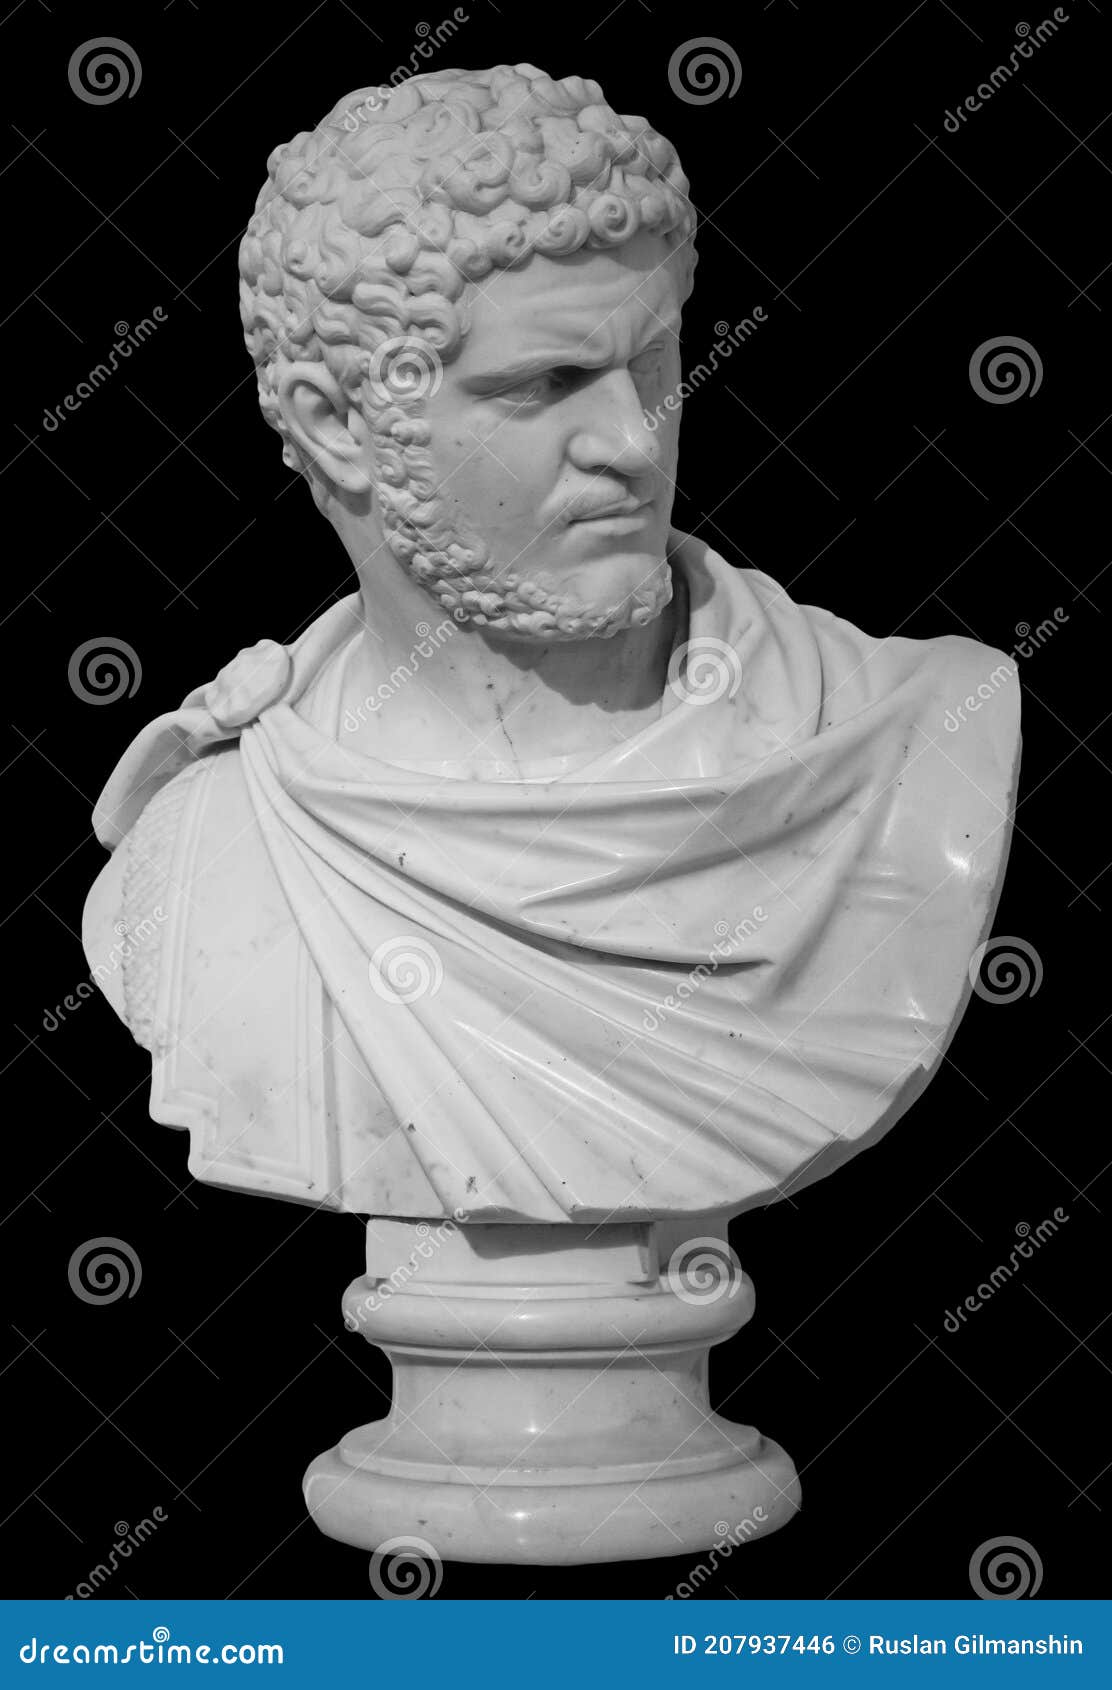 ancient white marble sculpture bust of caracalla. marcus aurelius severus antoninus augustus known as antoninus. roman